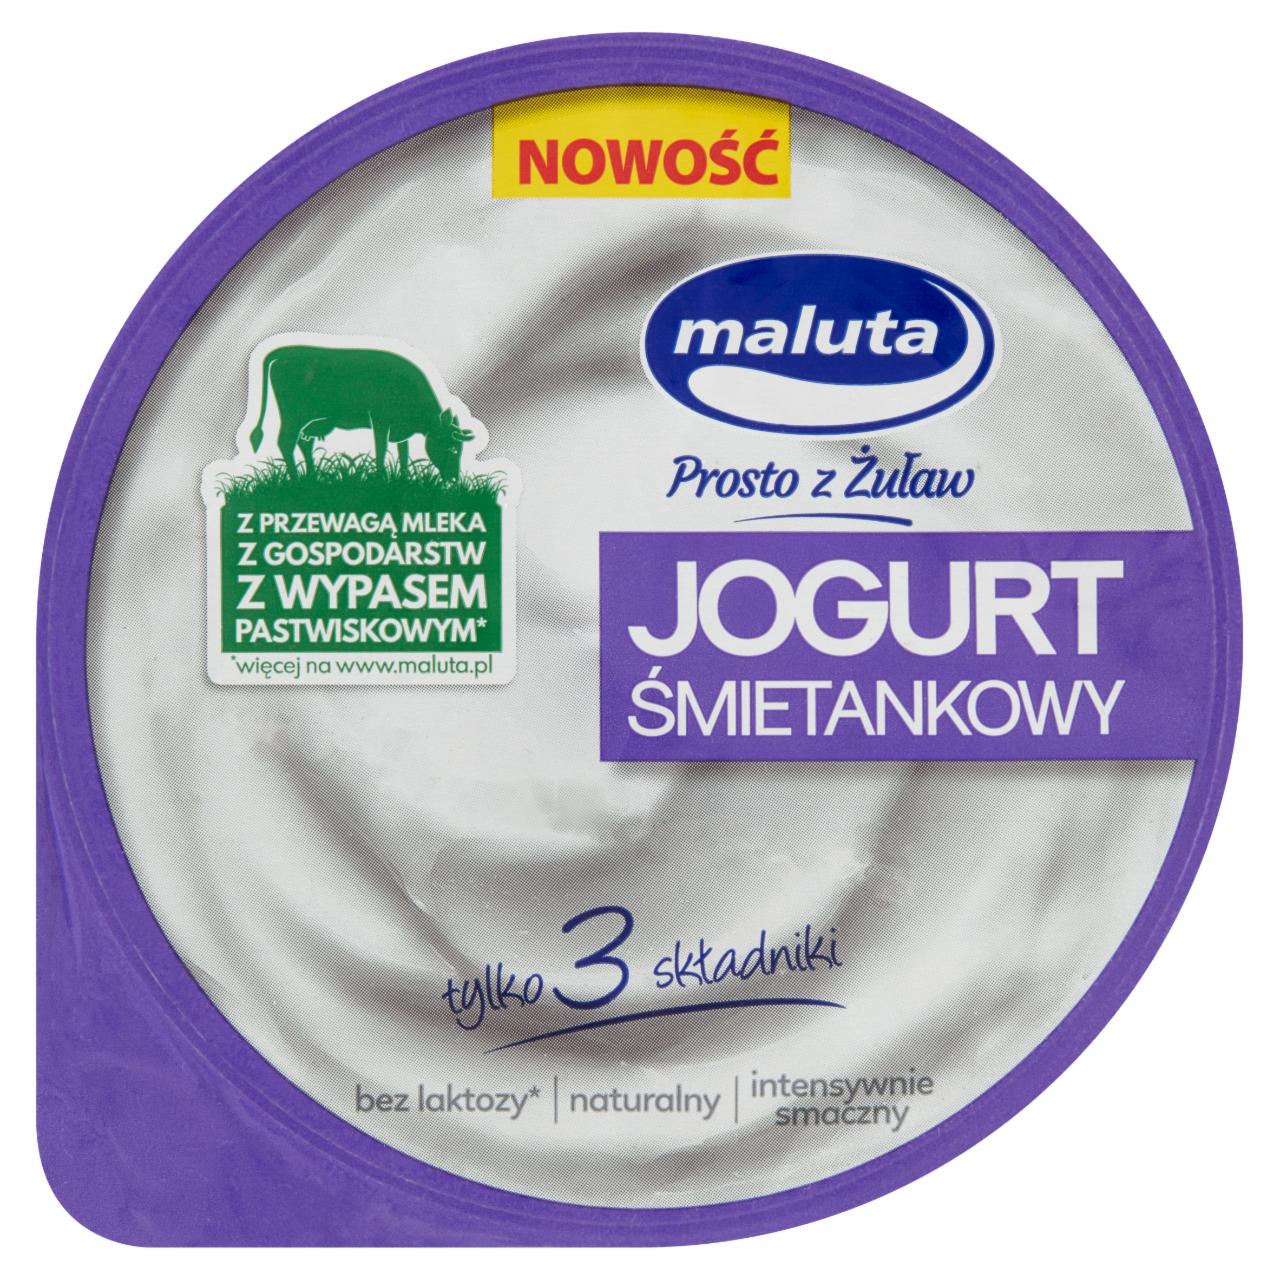 Zdjęcia - Maluta Jogurt śmietankowy naturalny bez laktozy 220 g